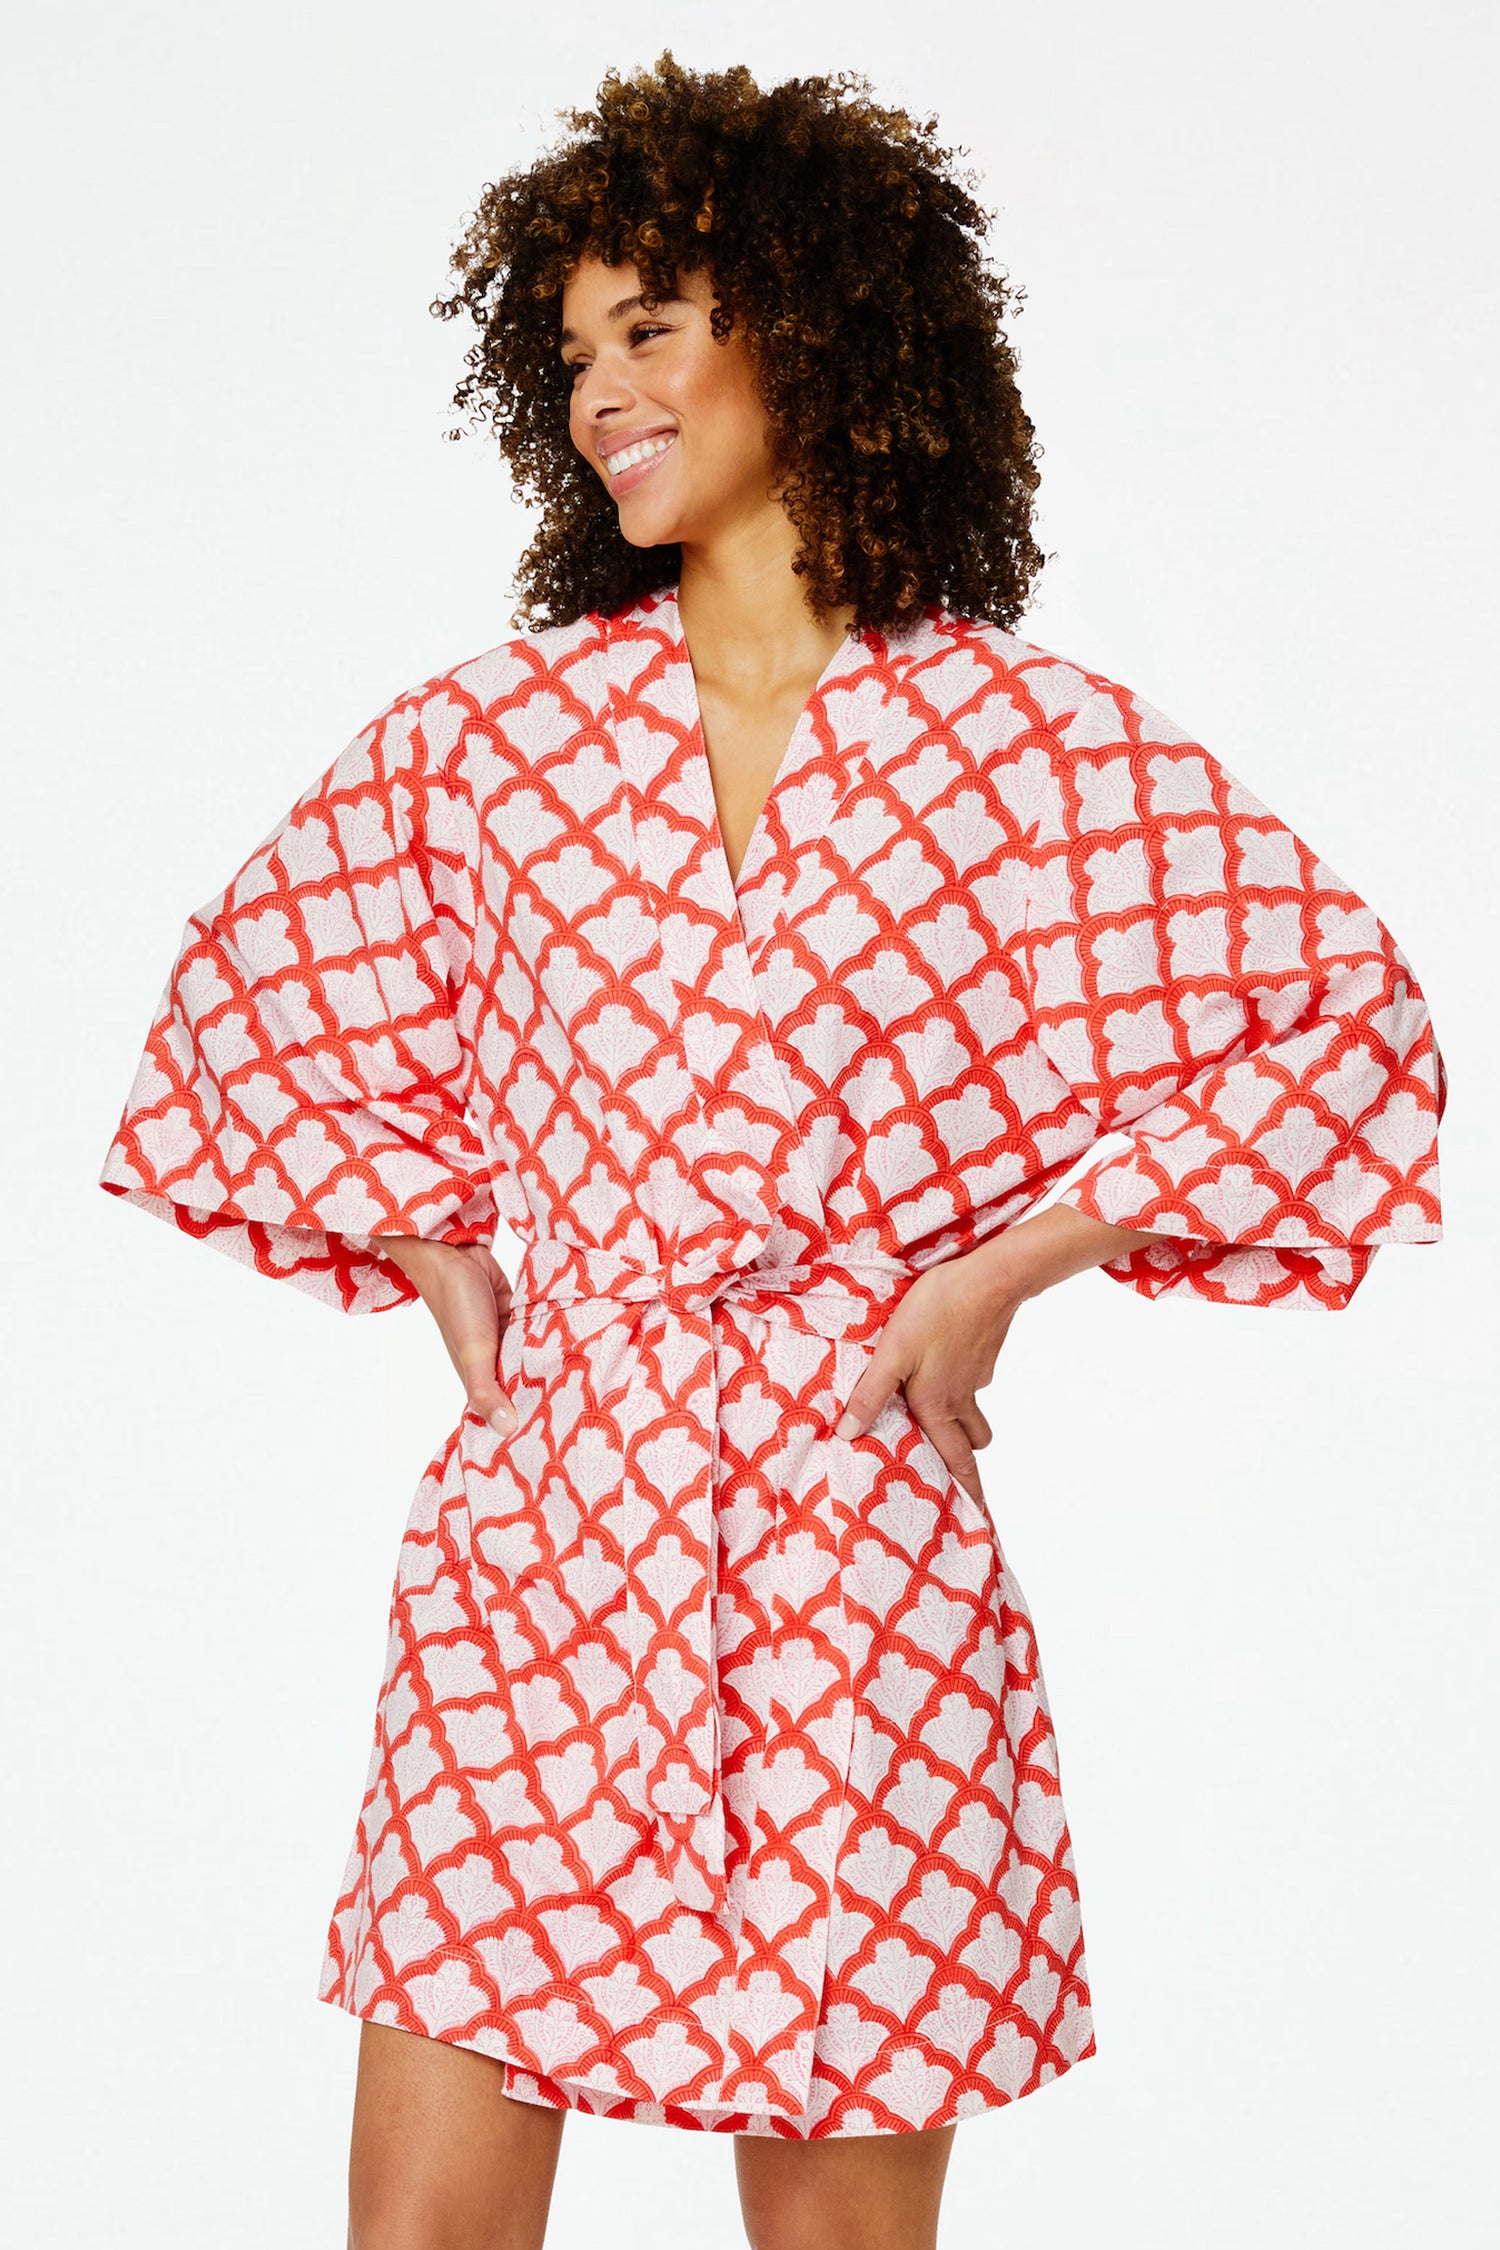 Robes & Kimonos